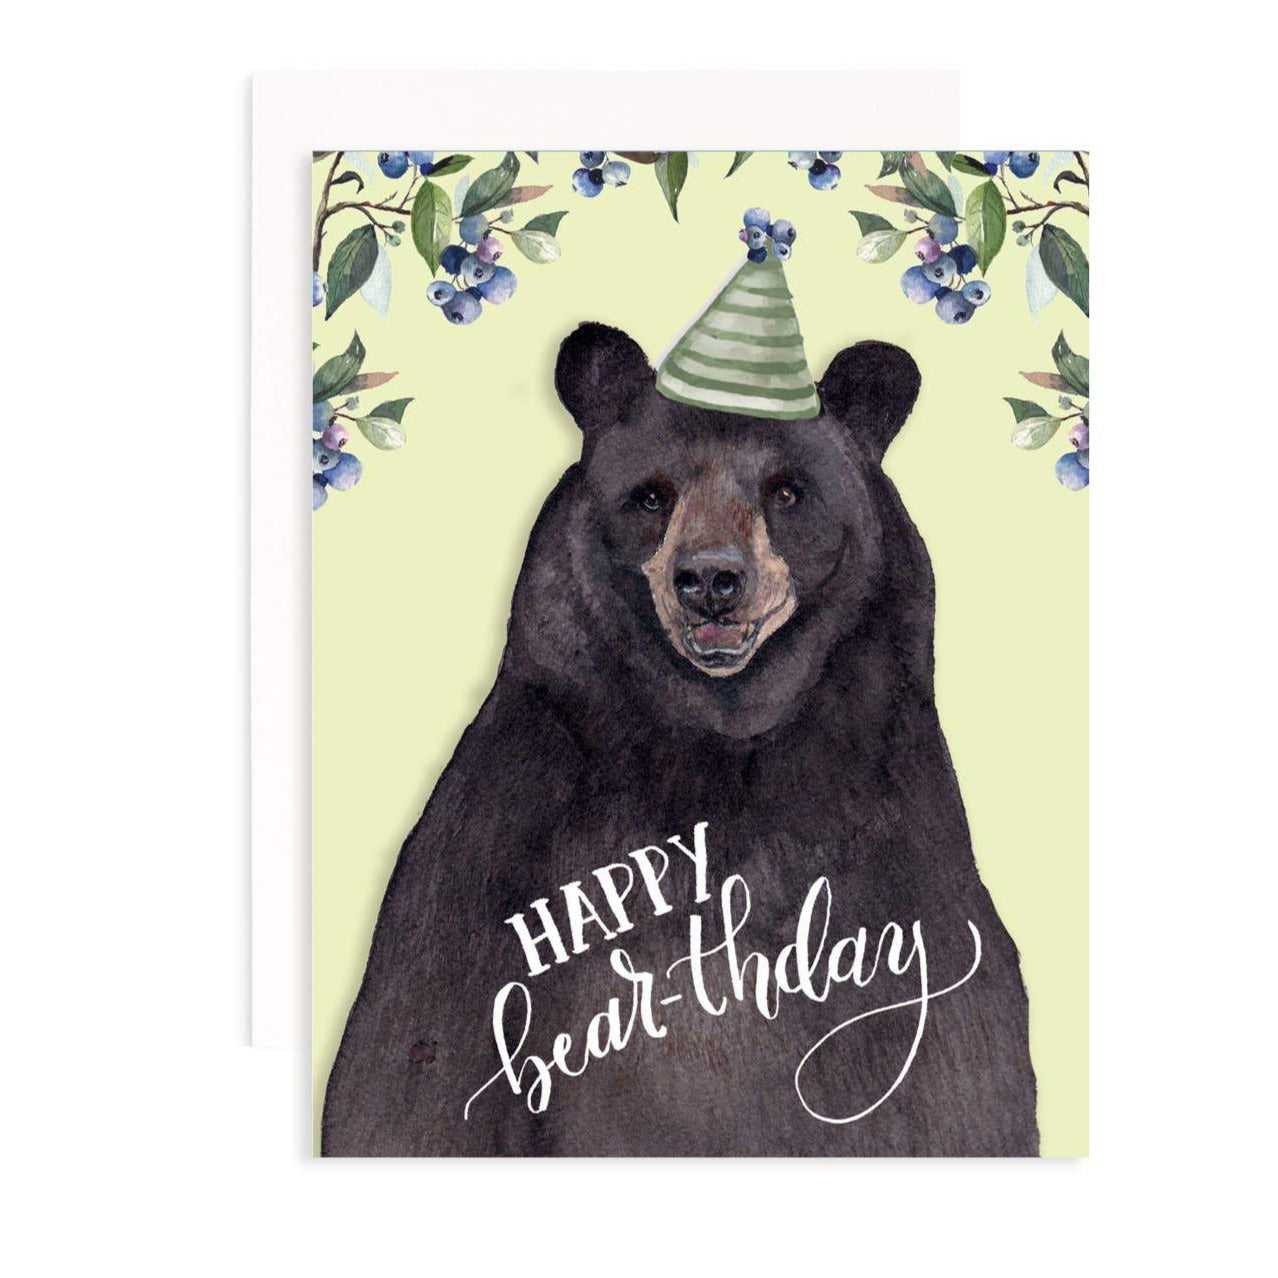 Happy Bear-thday